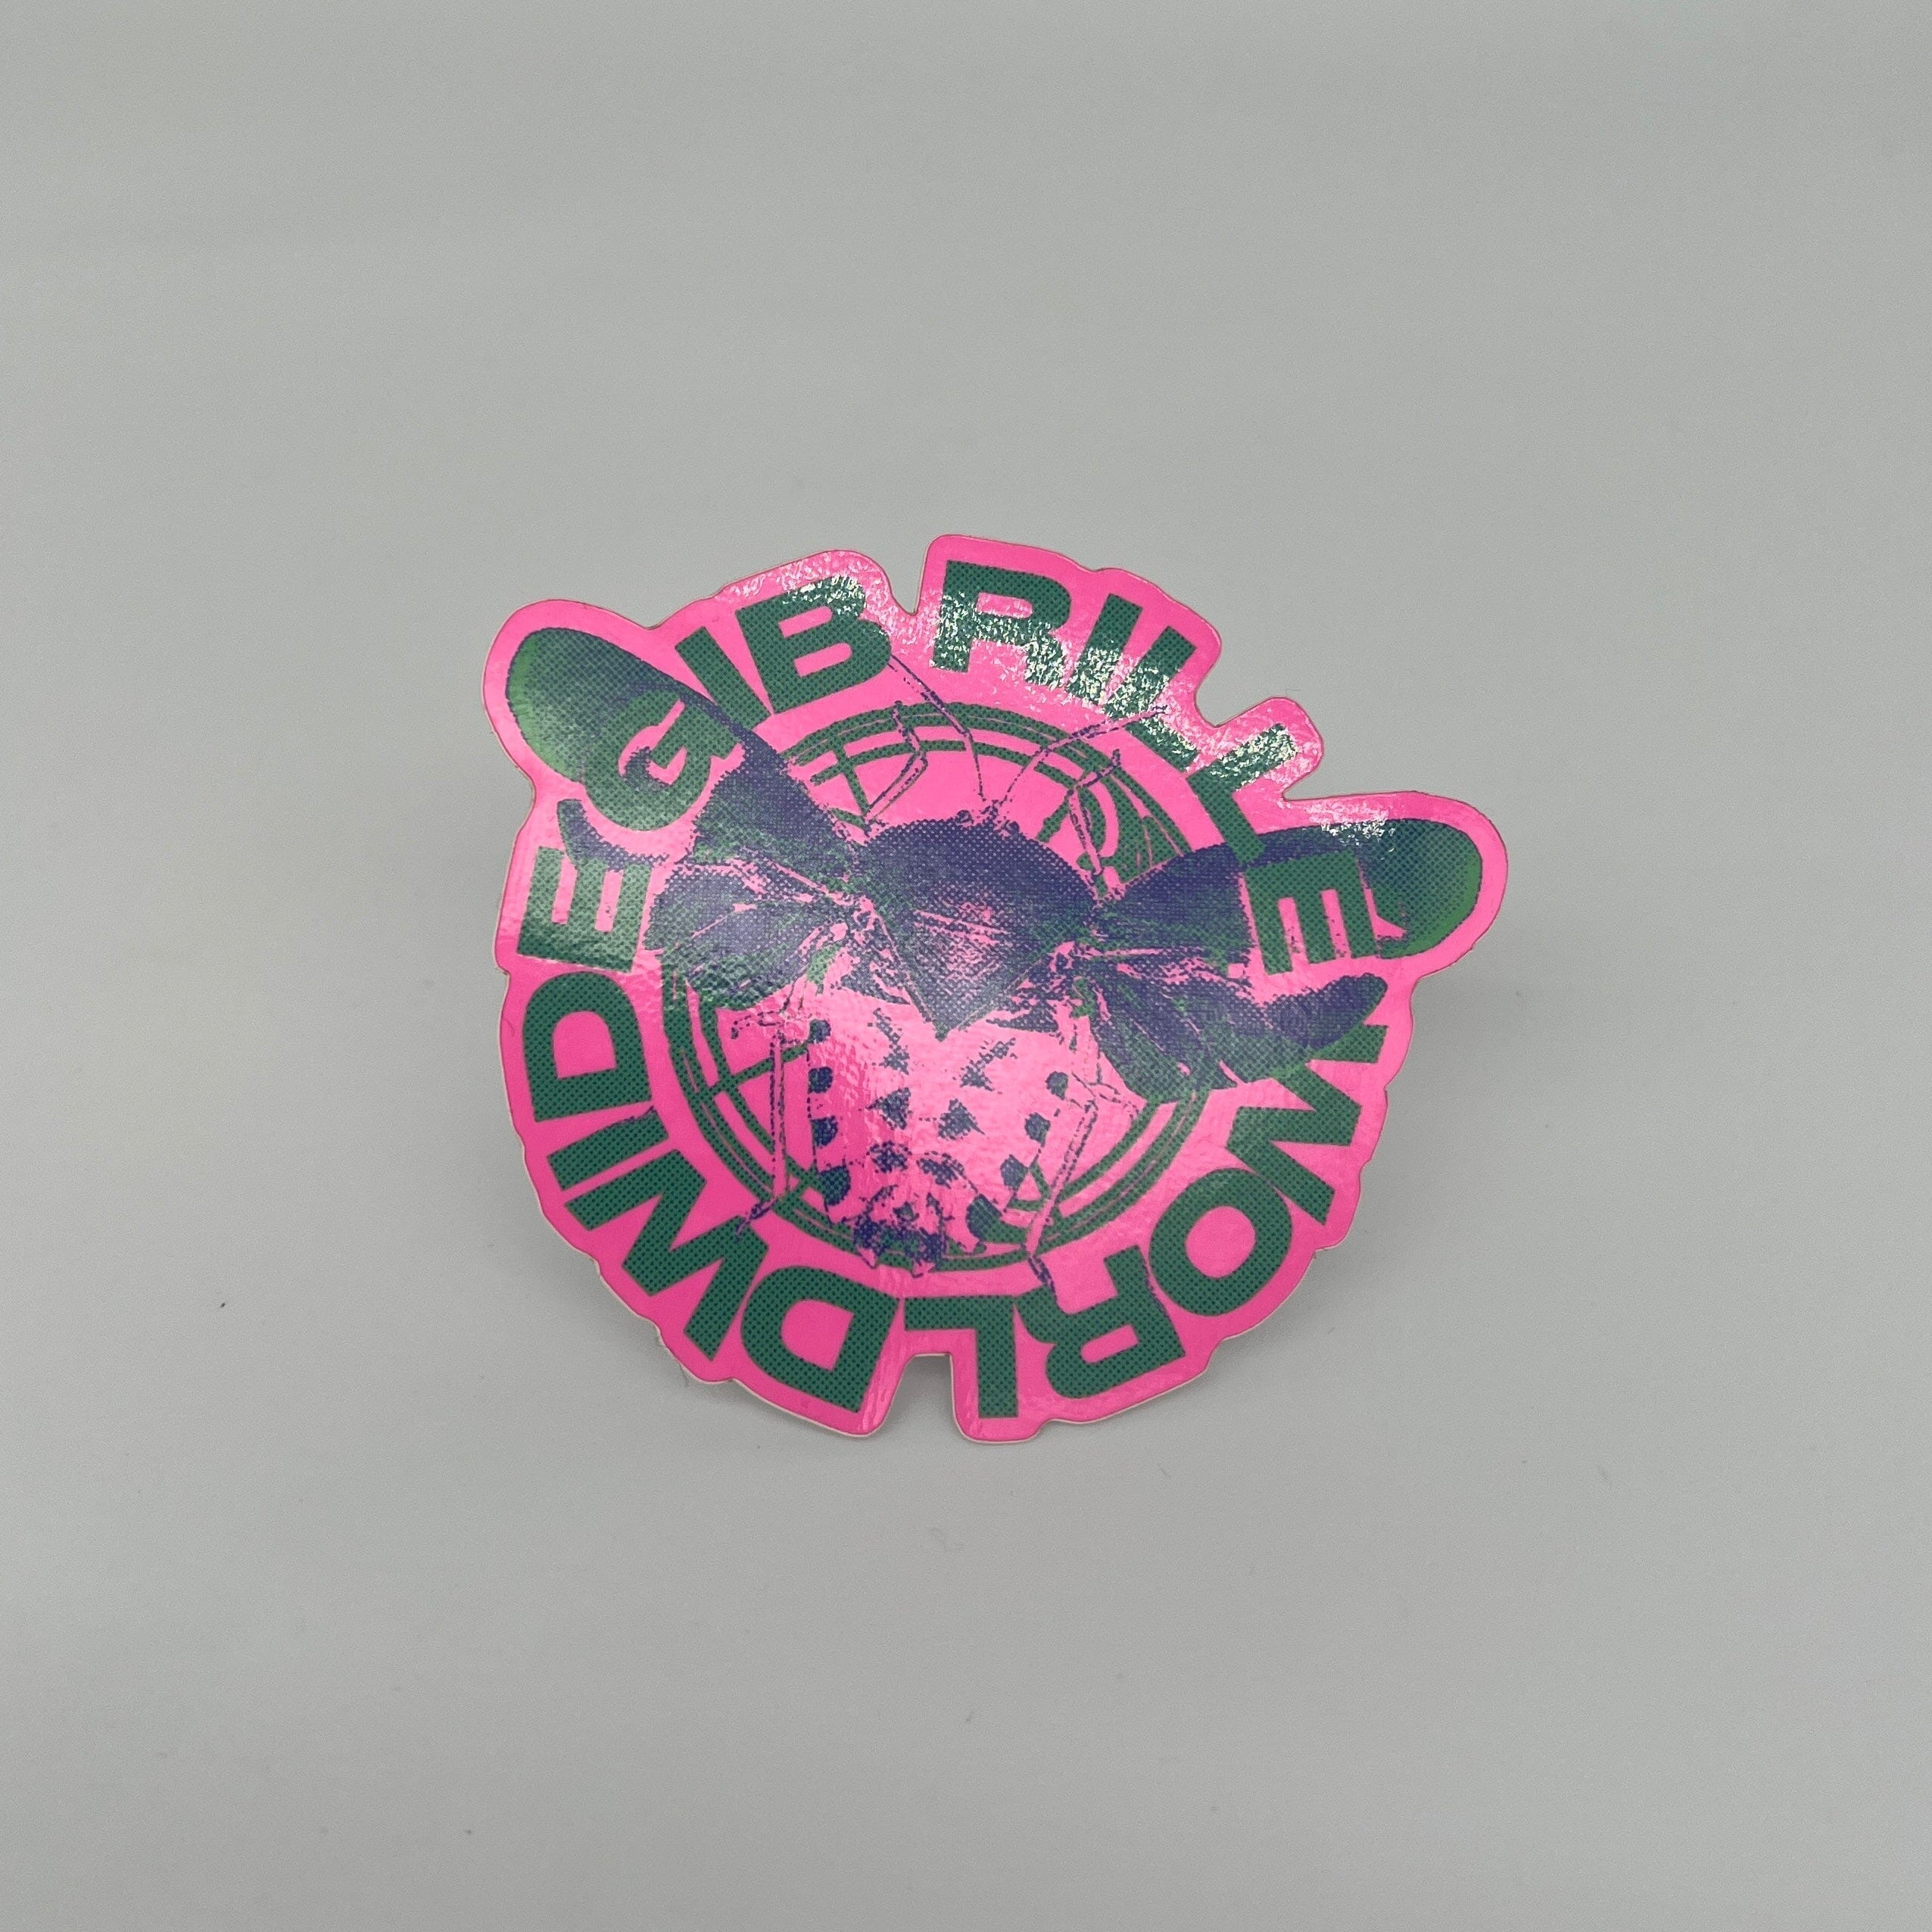 Gib Rillé Käfer Sticker Aufkleber fluoreszierender Neon-Farbe